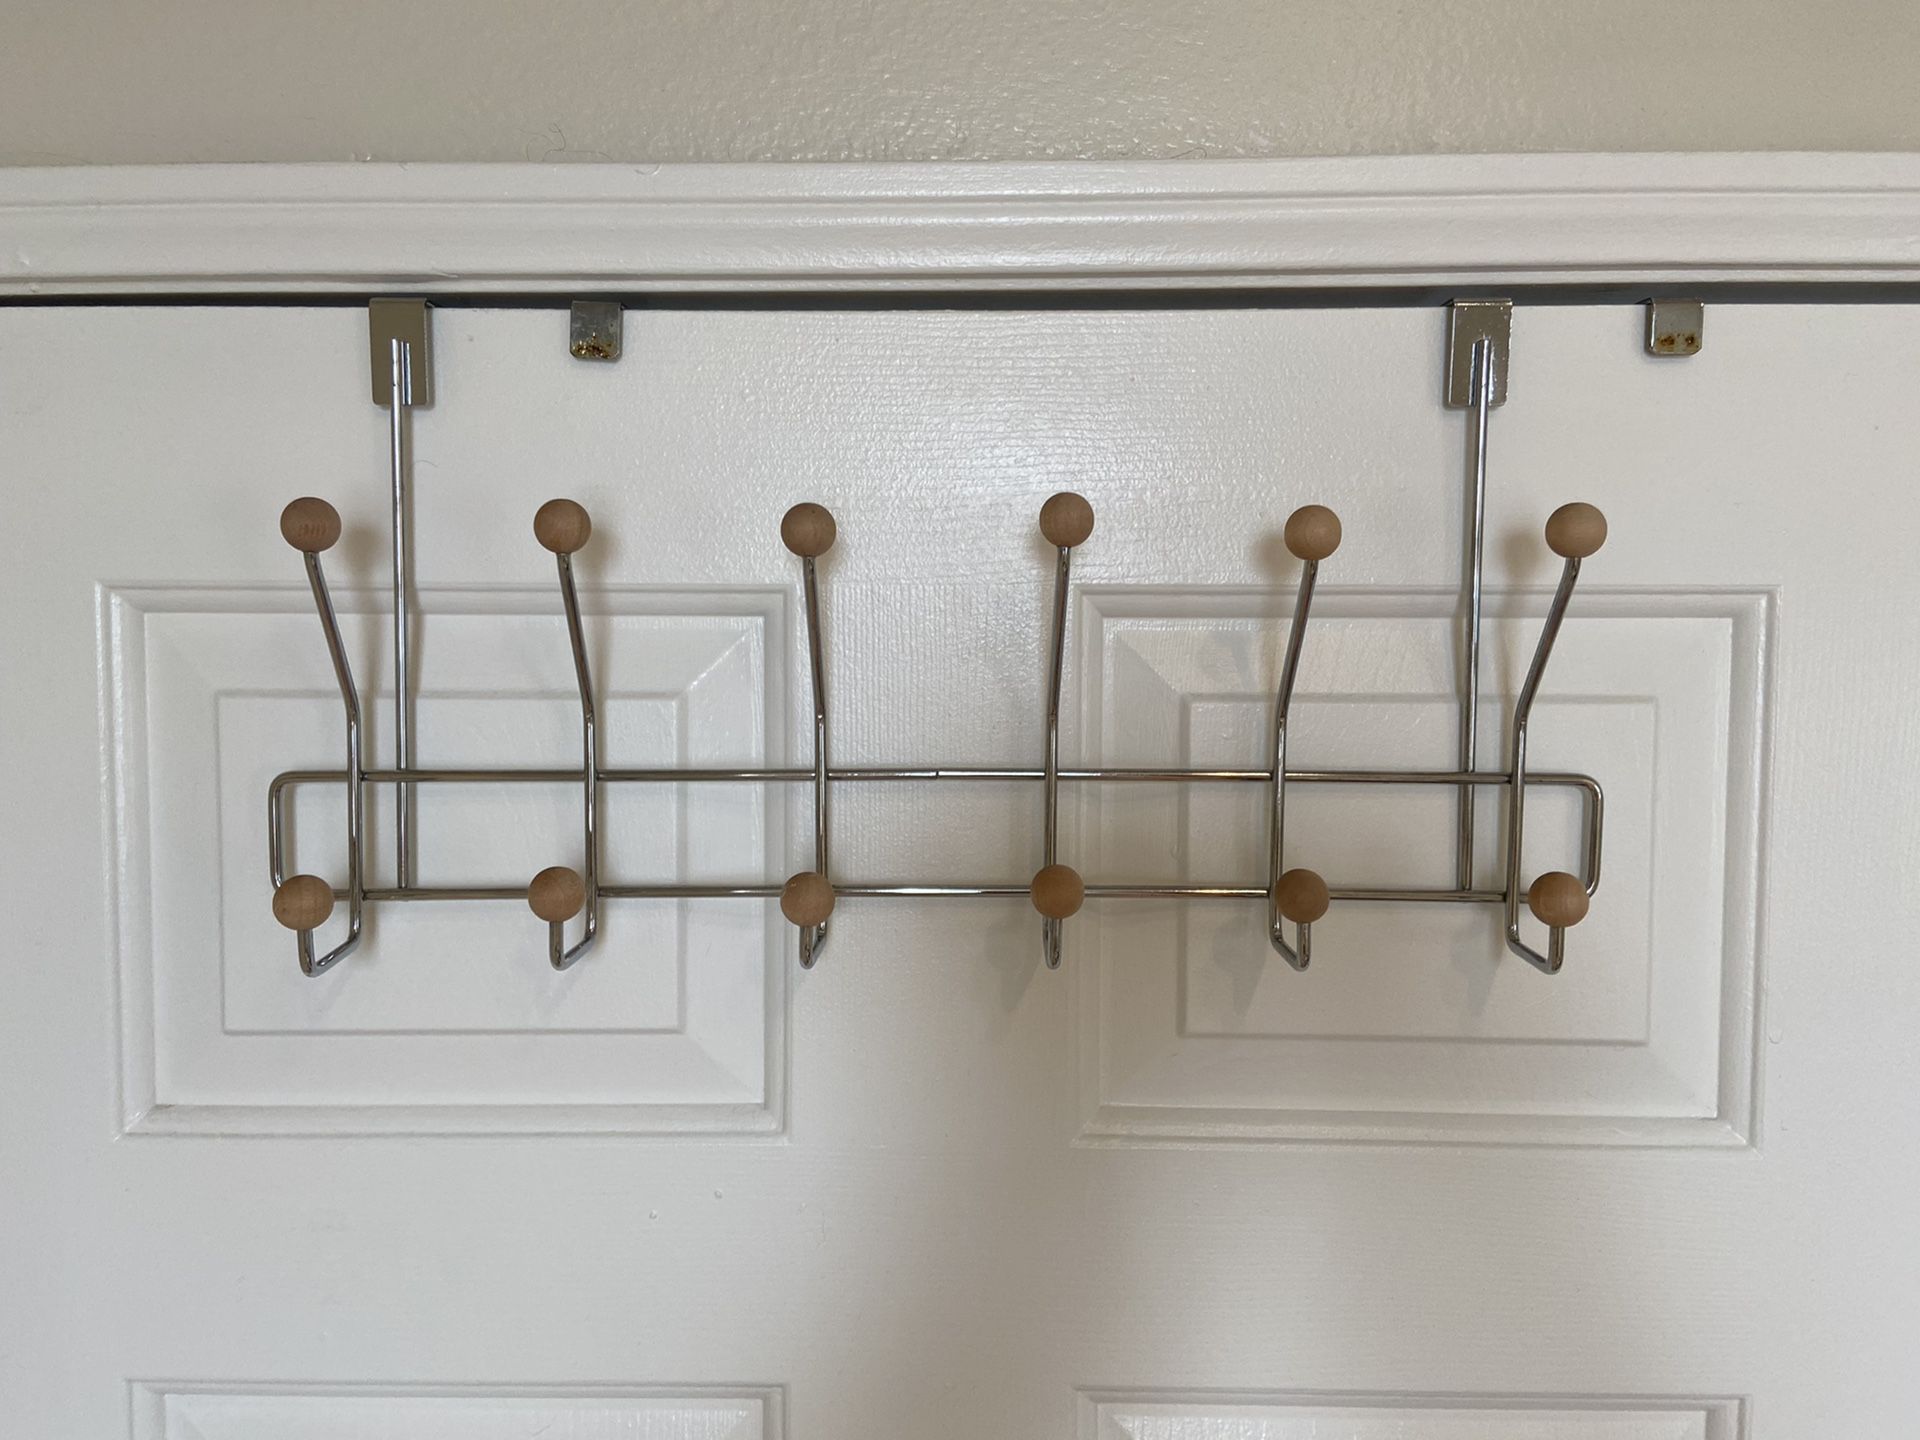 Home Basics 6 Dual Hook Over The Door Hanger